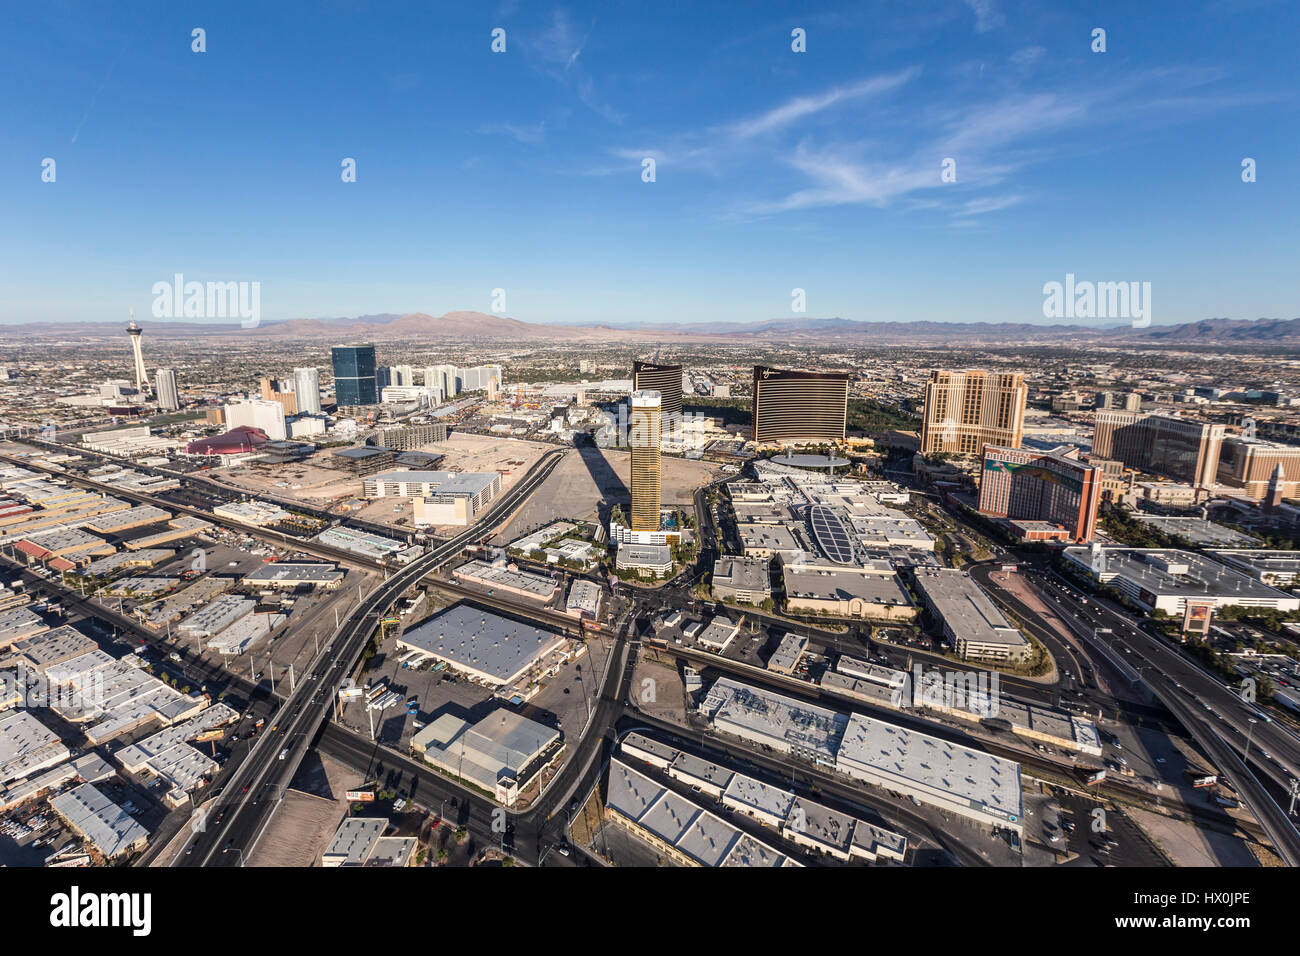 Las Vegas, Nevada, USA - Mars 13, 2017 : Vue aérienne de casino resort towers sur le Strip de Las Vegas. Banque D'Images